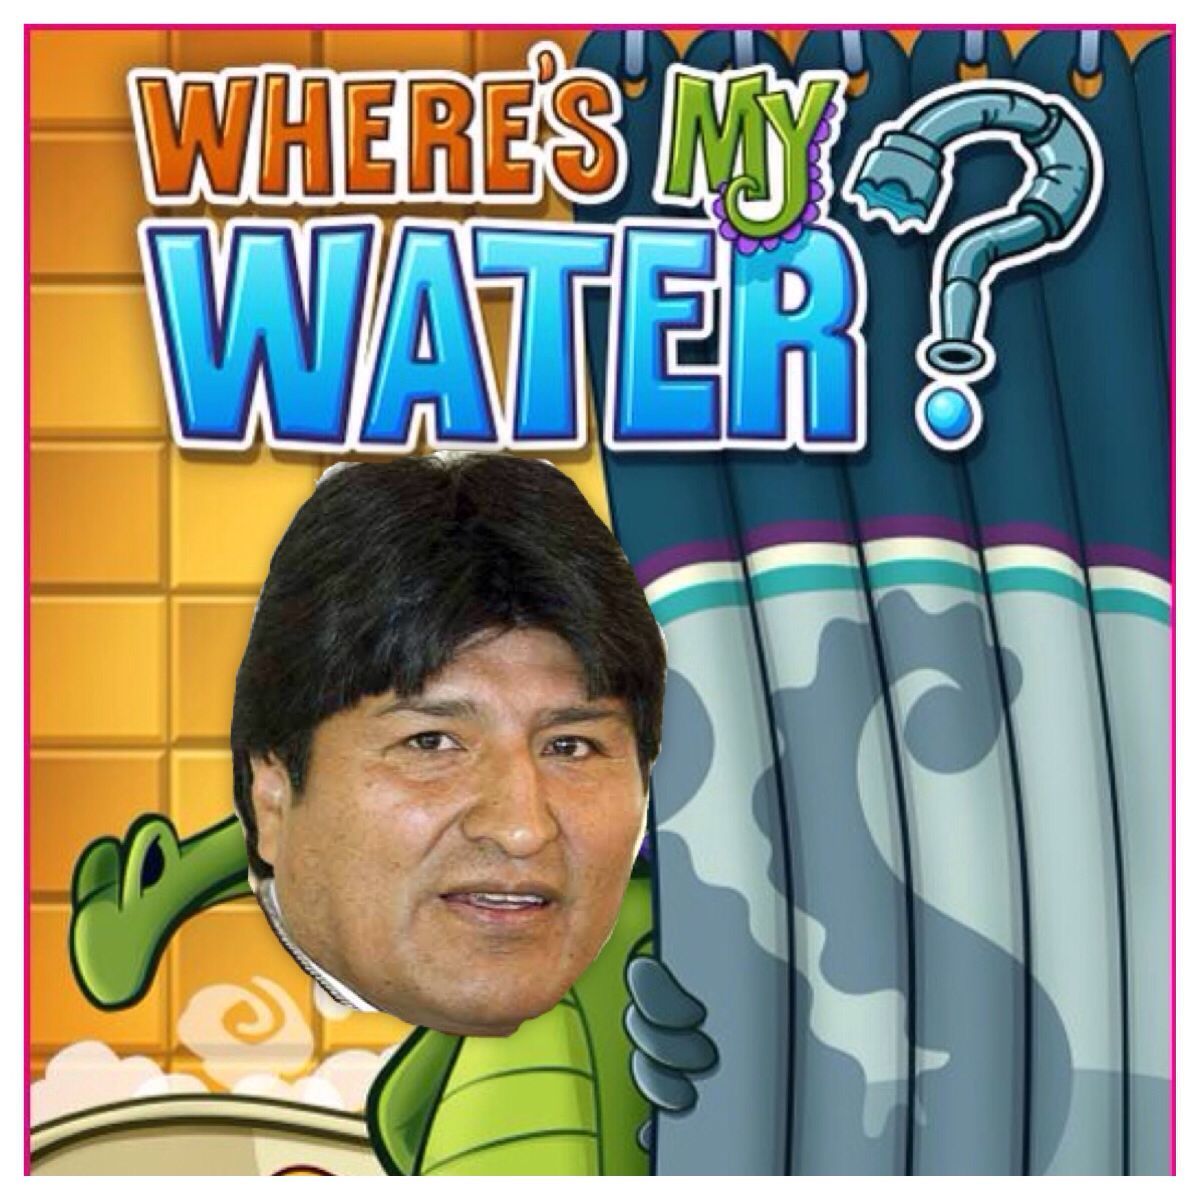 Donde esta mi agua? - meme